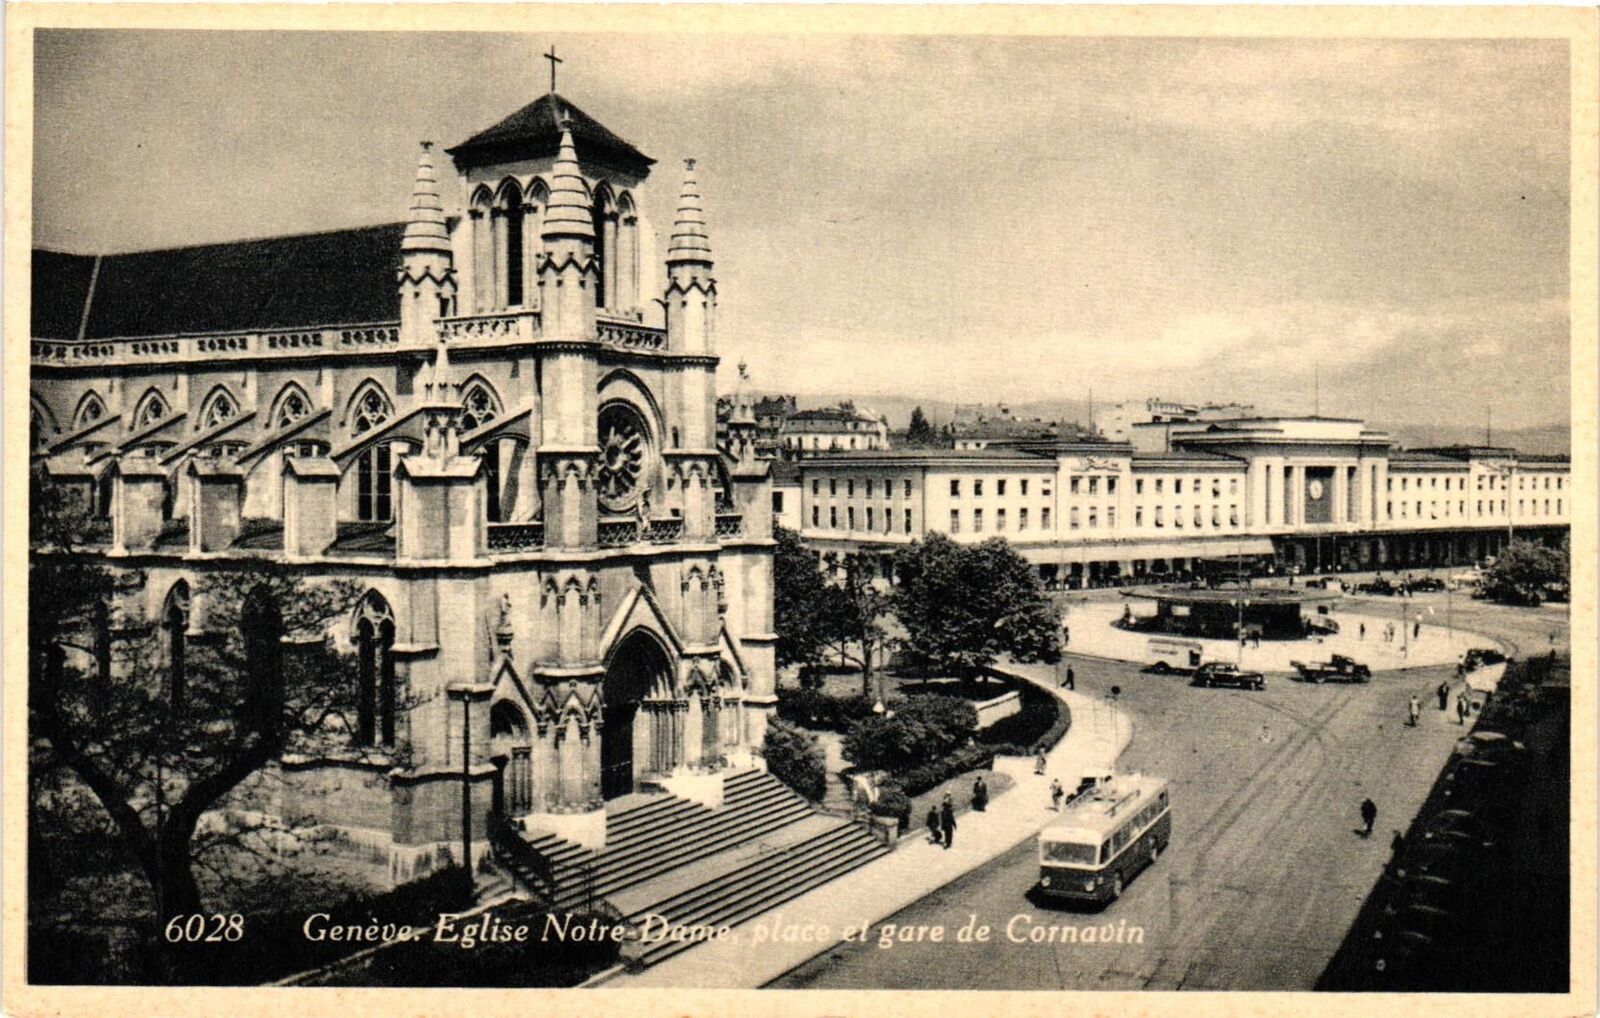 VTG Postcard RPPC- Eglise Notre-Dame, Geneva Early 1900s